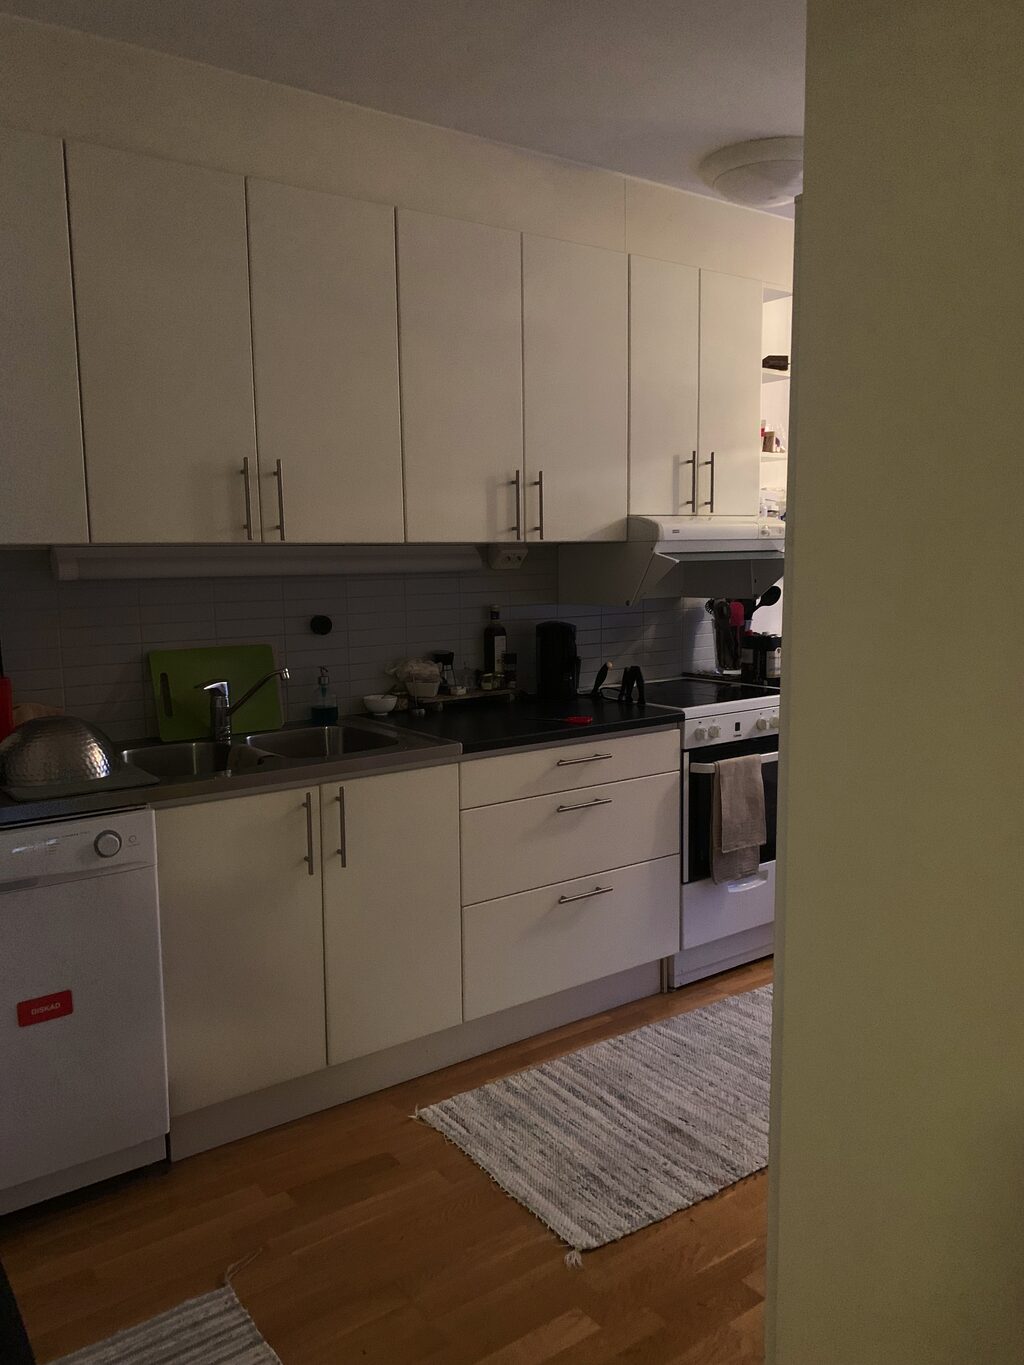 Lägenhetsbyte - Kvarnängsgatan 5, 754 20 Uppsala